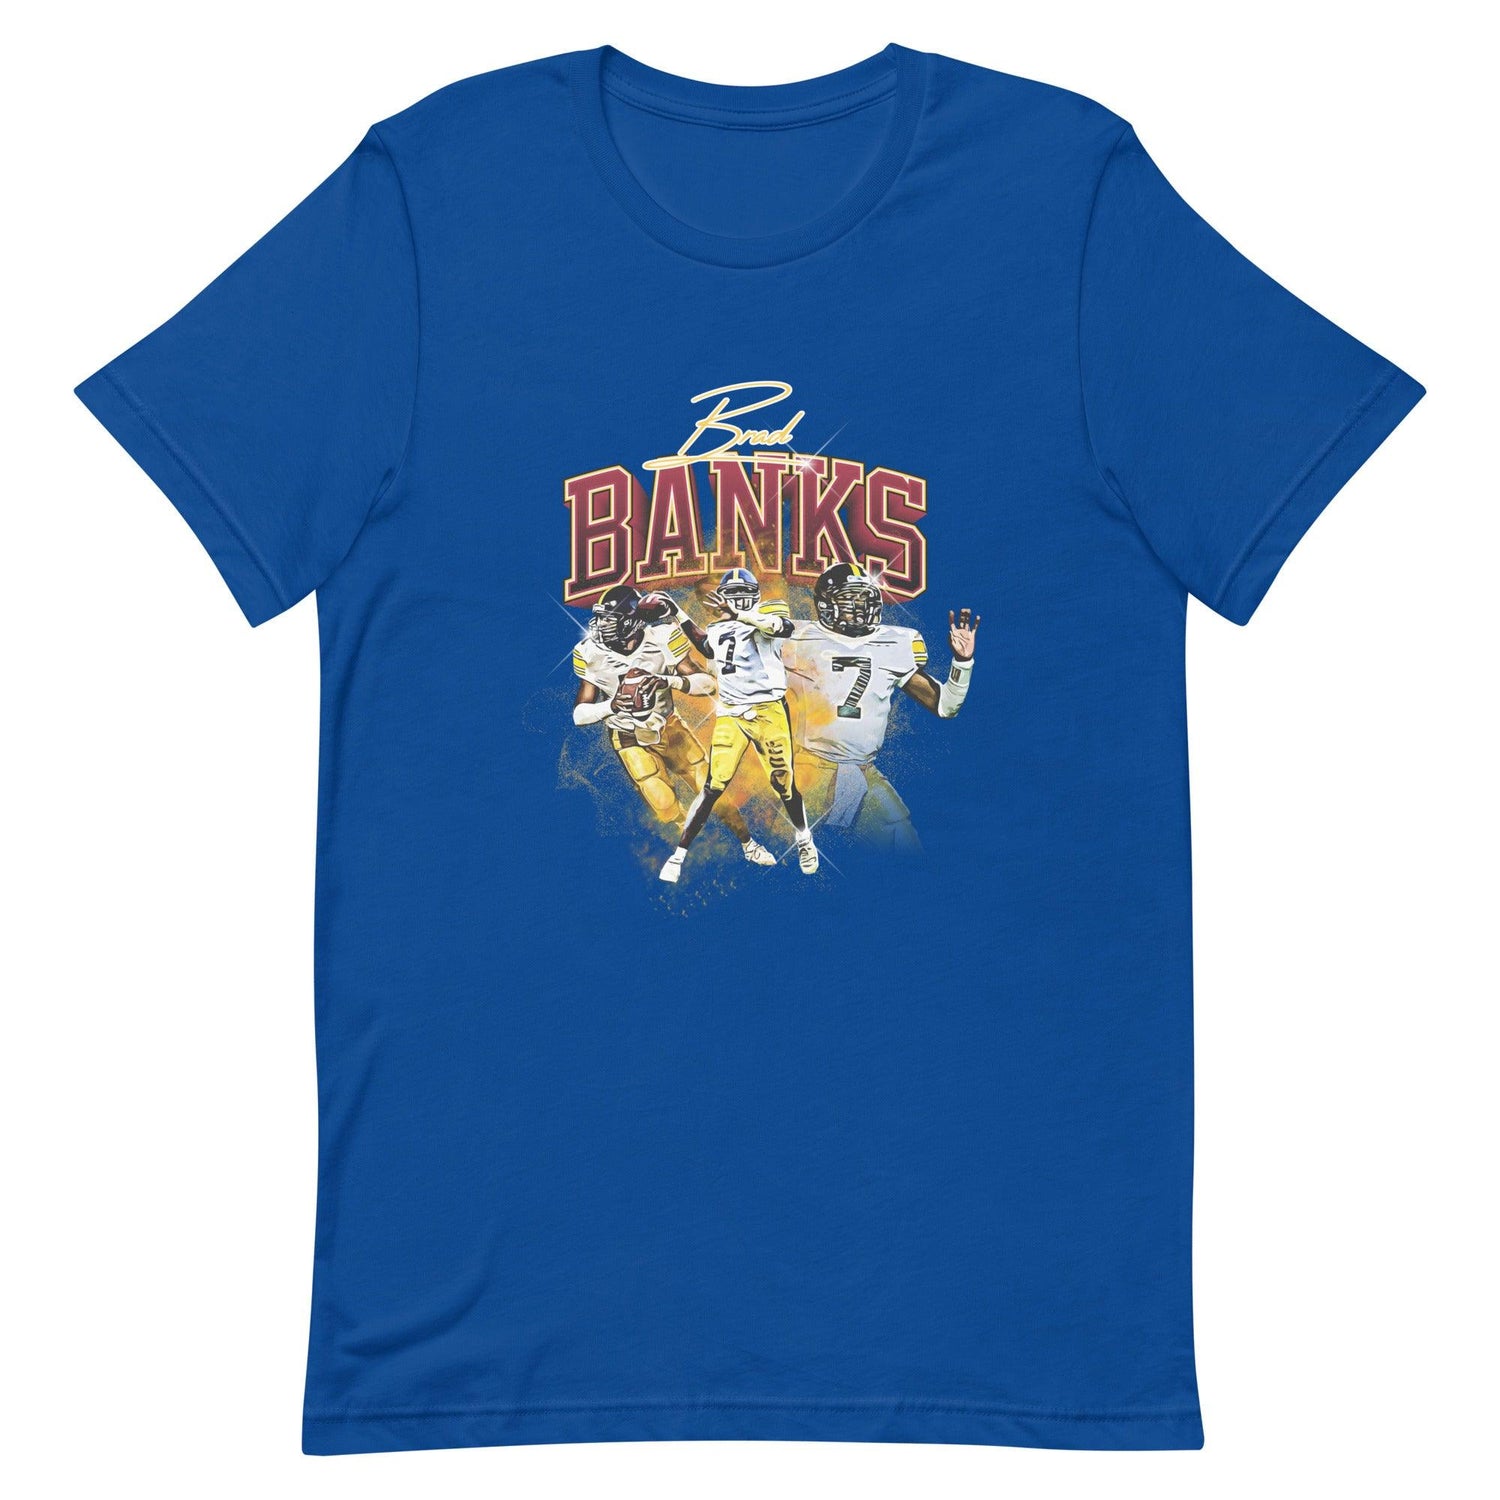 Brad Banks "Vintage" t-shirt - Fan Arch